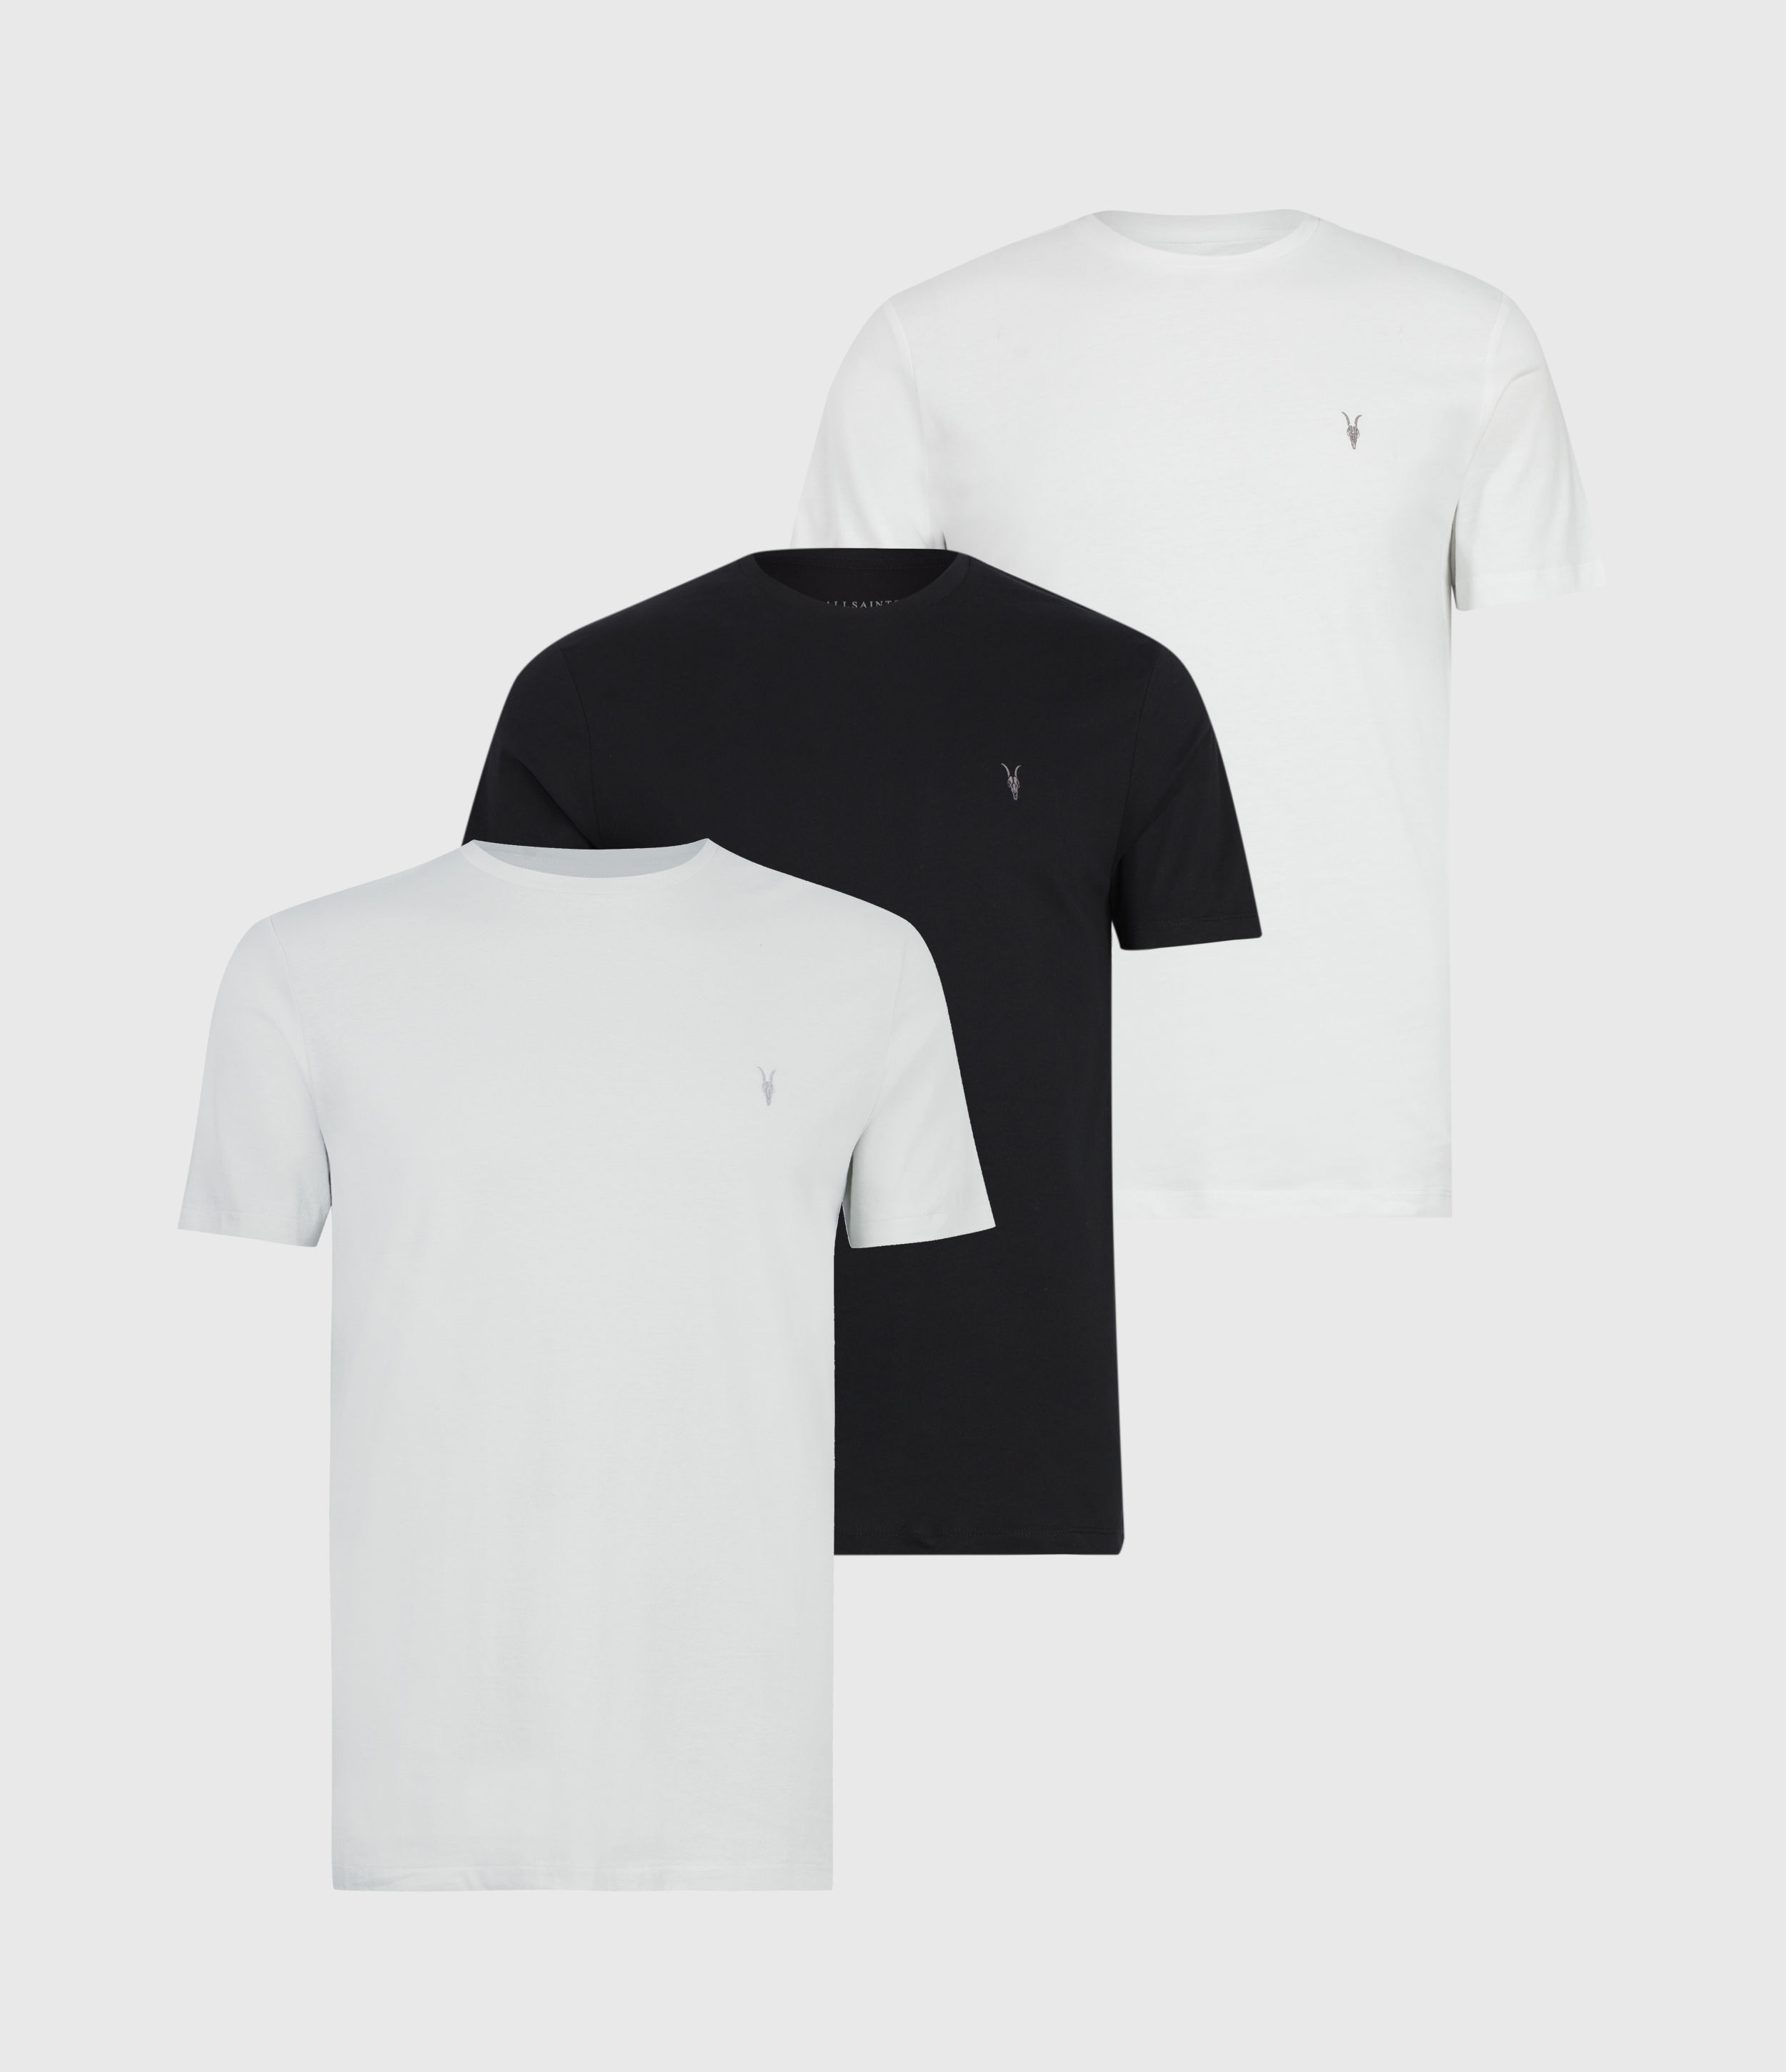 AllSaints Men's Tonic Crew T-Shirt 3 Pack, Opt/jet/quarry GRY, Size: XS